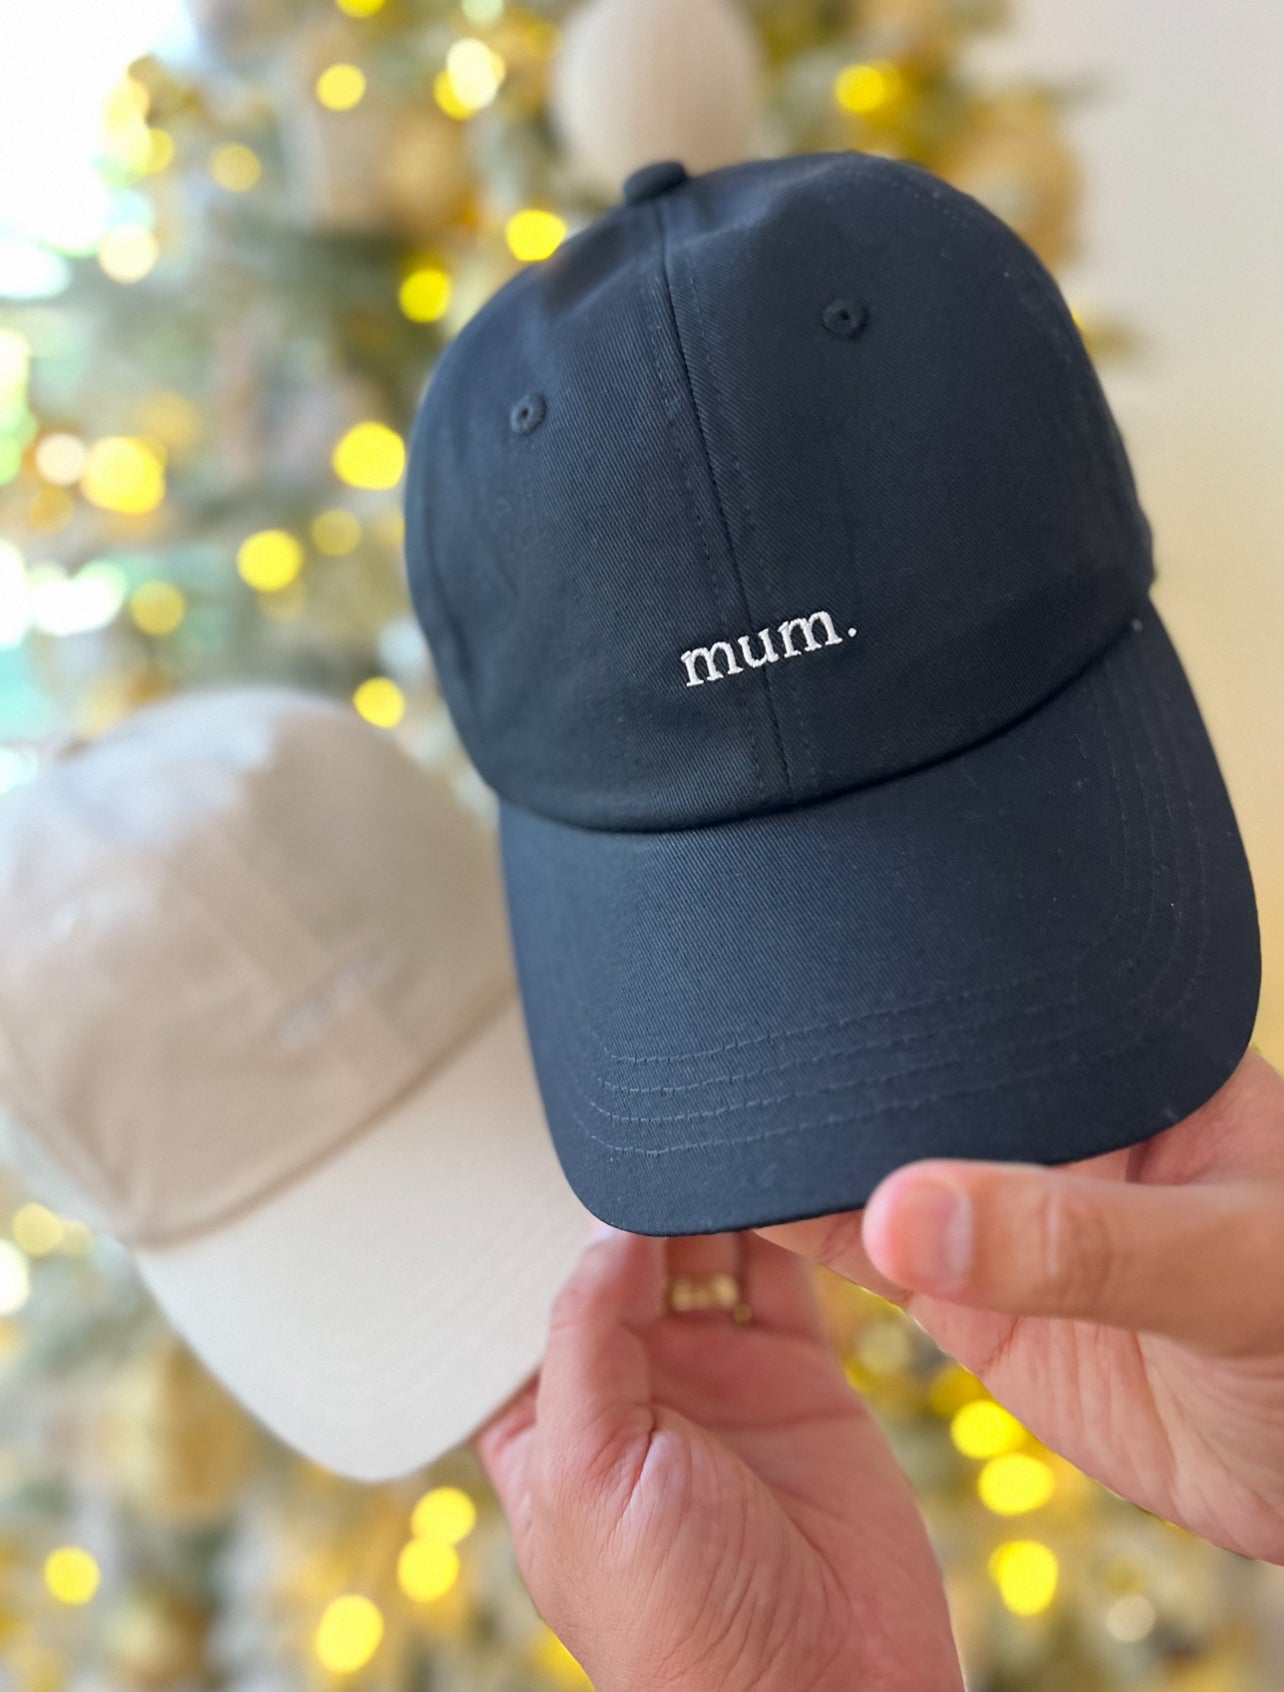 "mum." hat